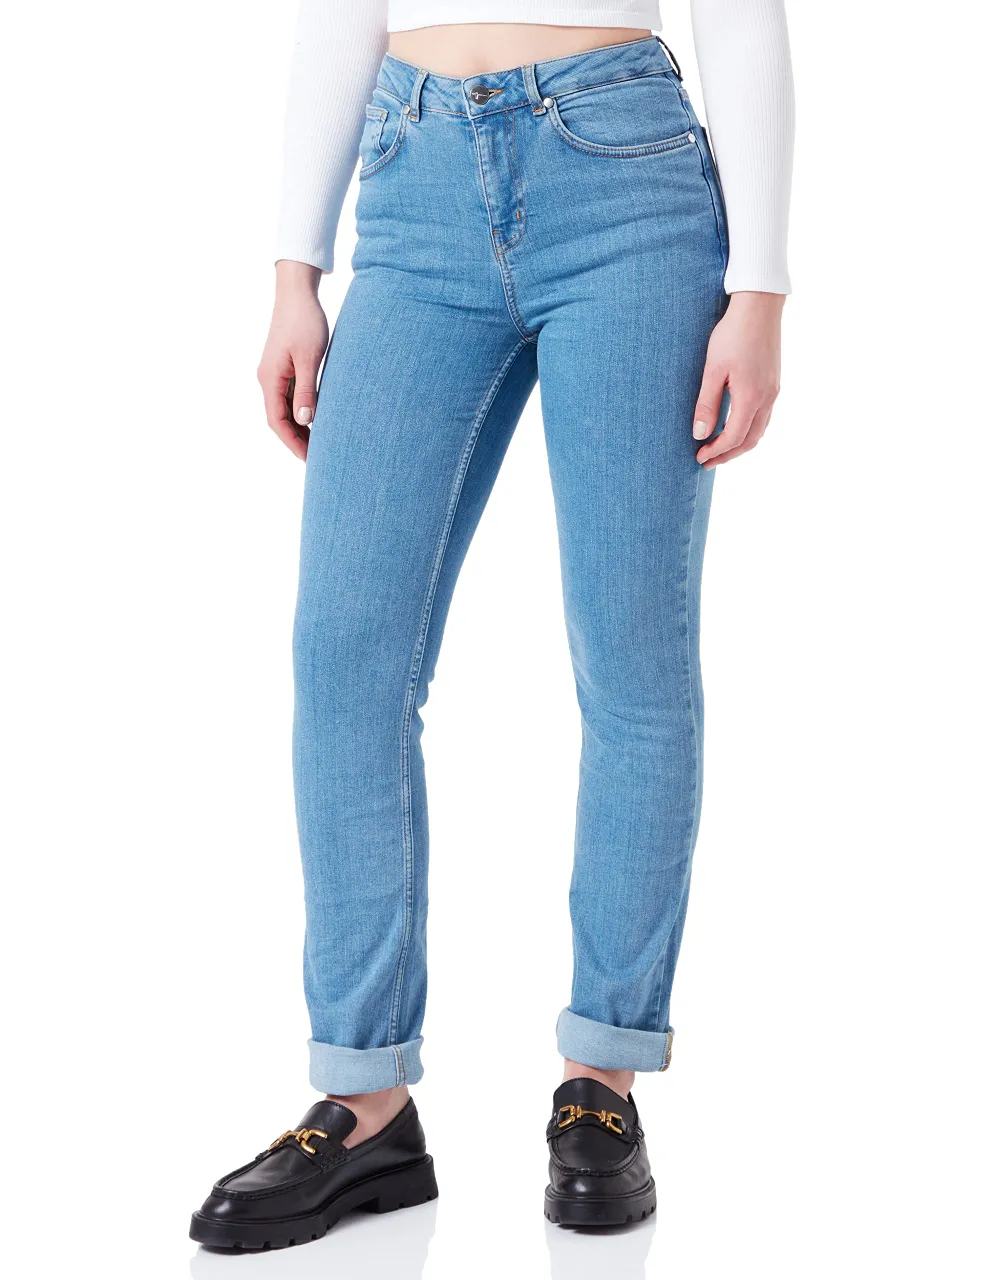 Tamaris Damen Slim Jeans AGBOR Blau 38/32